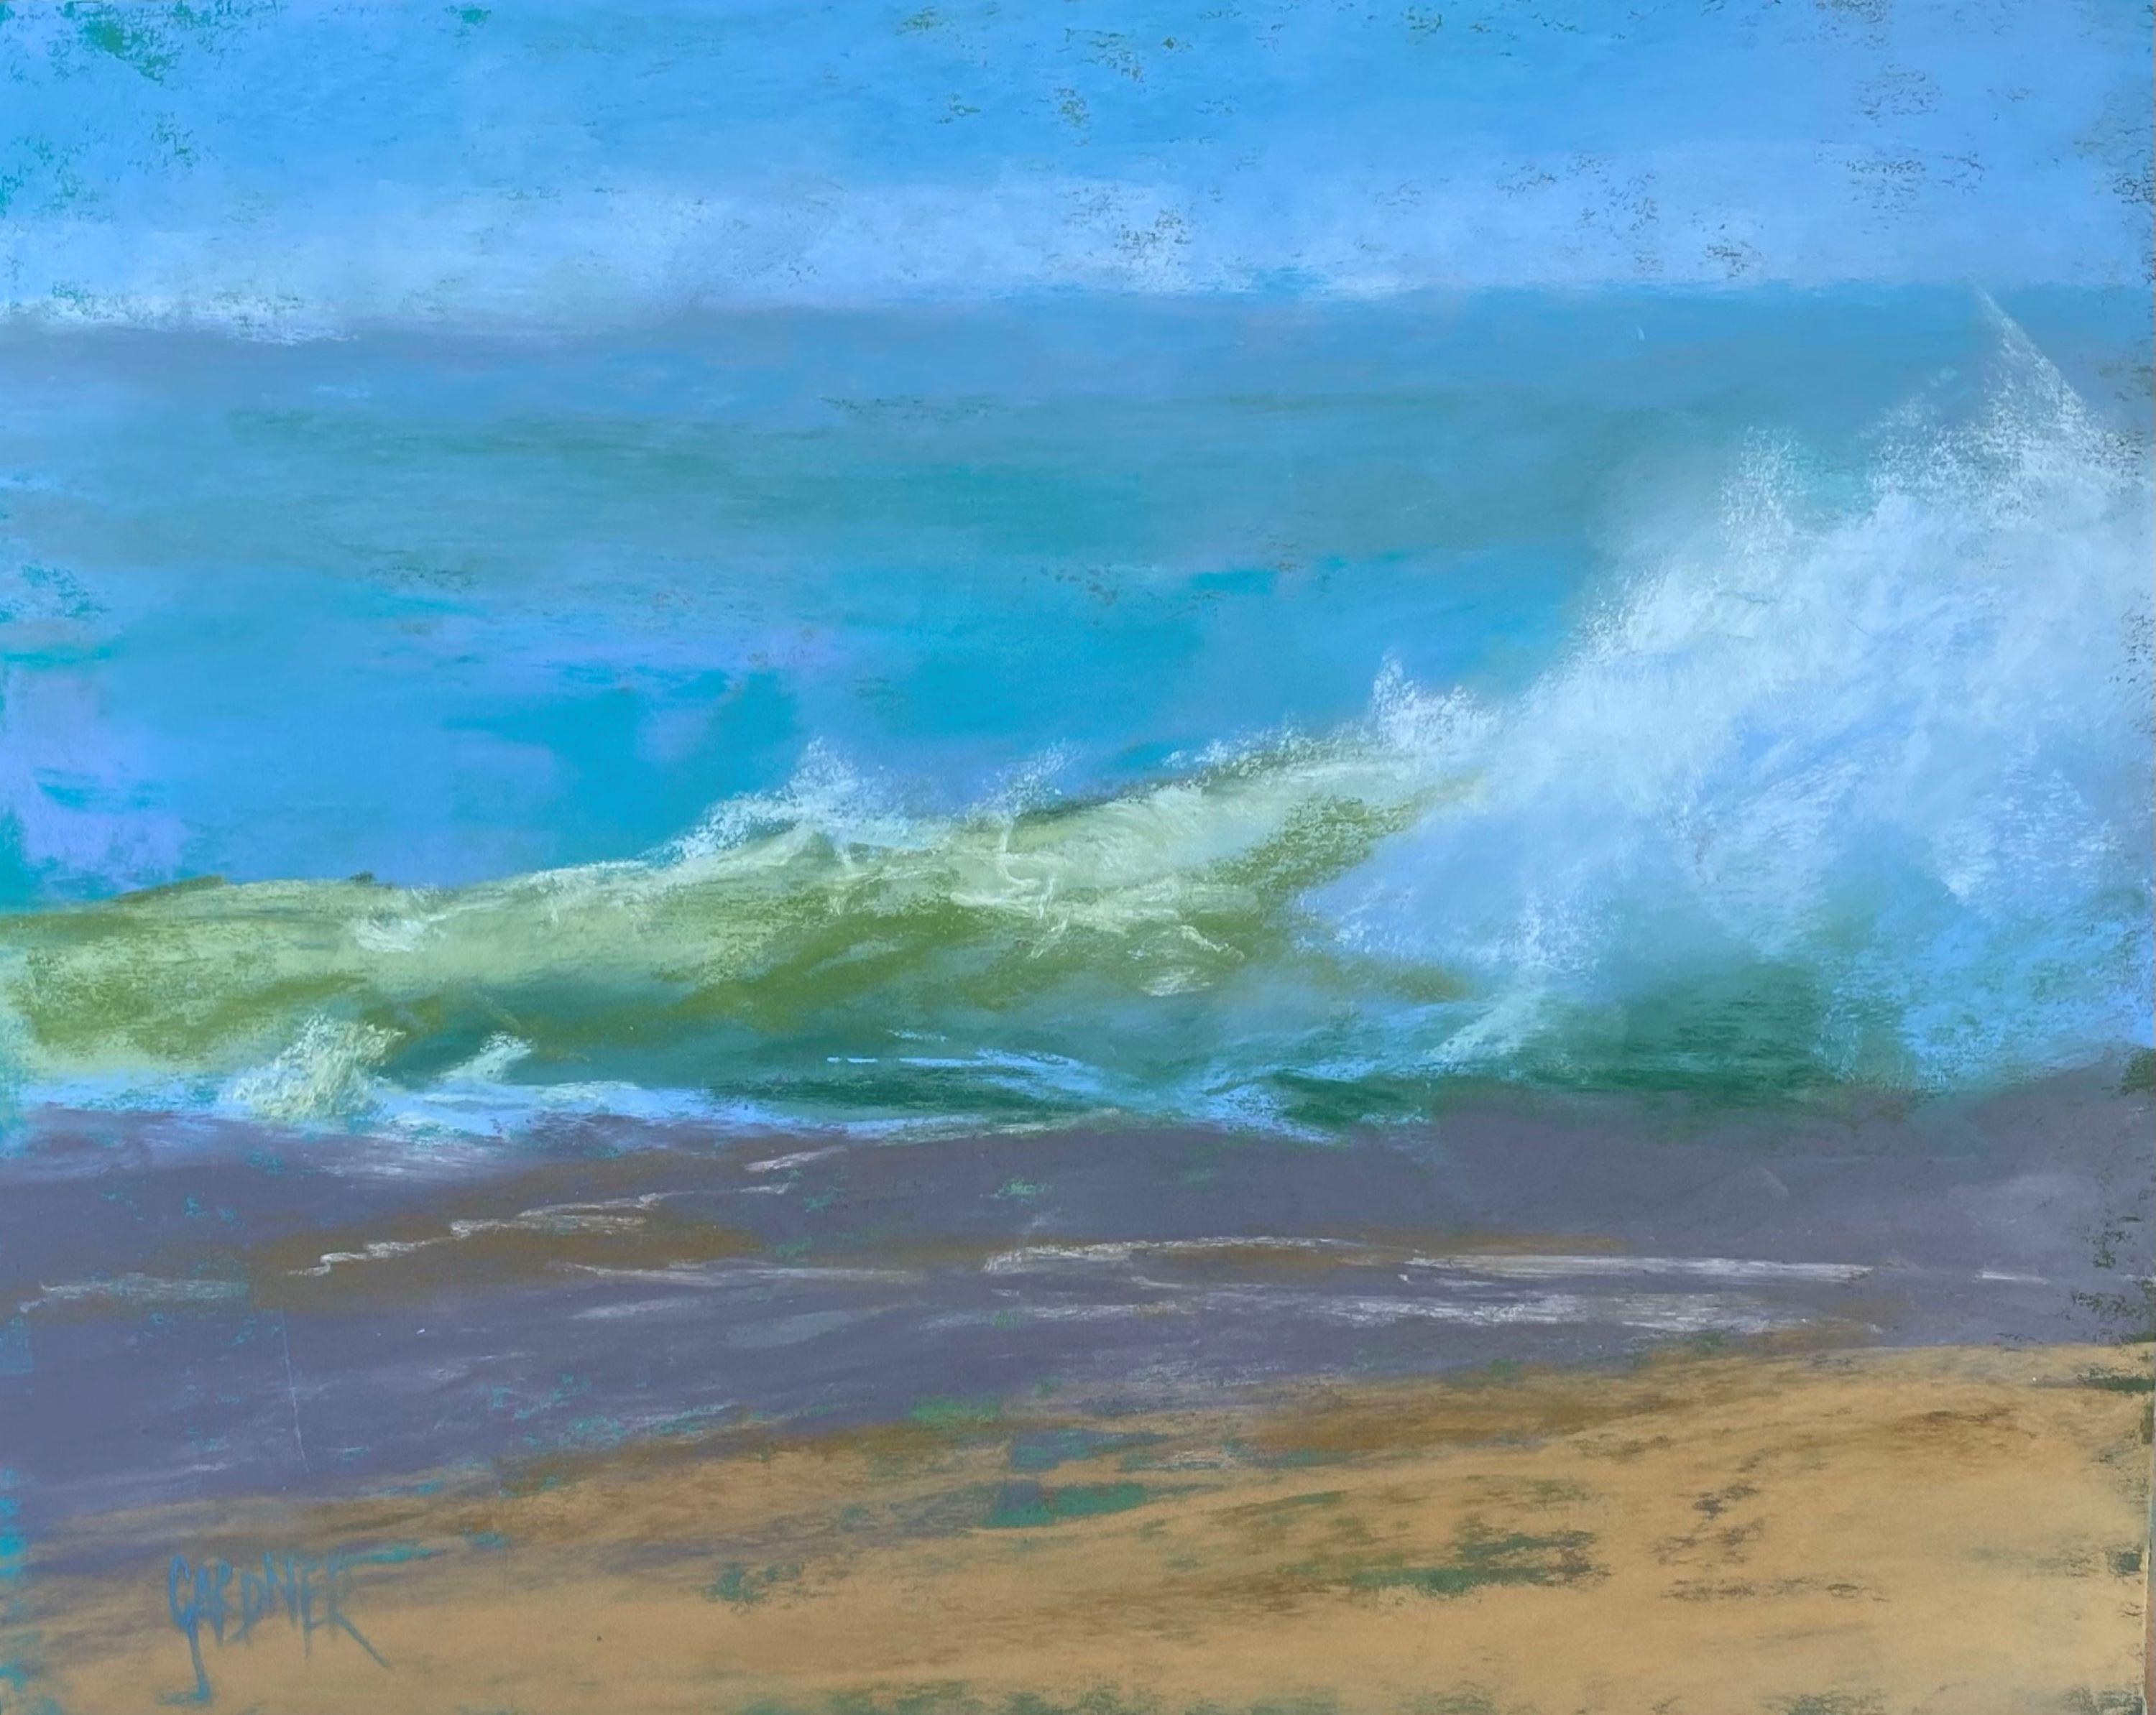 Wave in Abstract, peinture impressionniste originale de paysage marin au pastel sur panneau, 2021